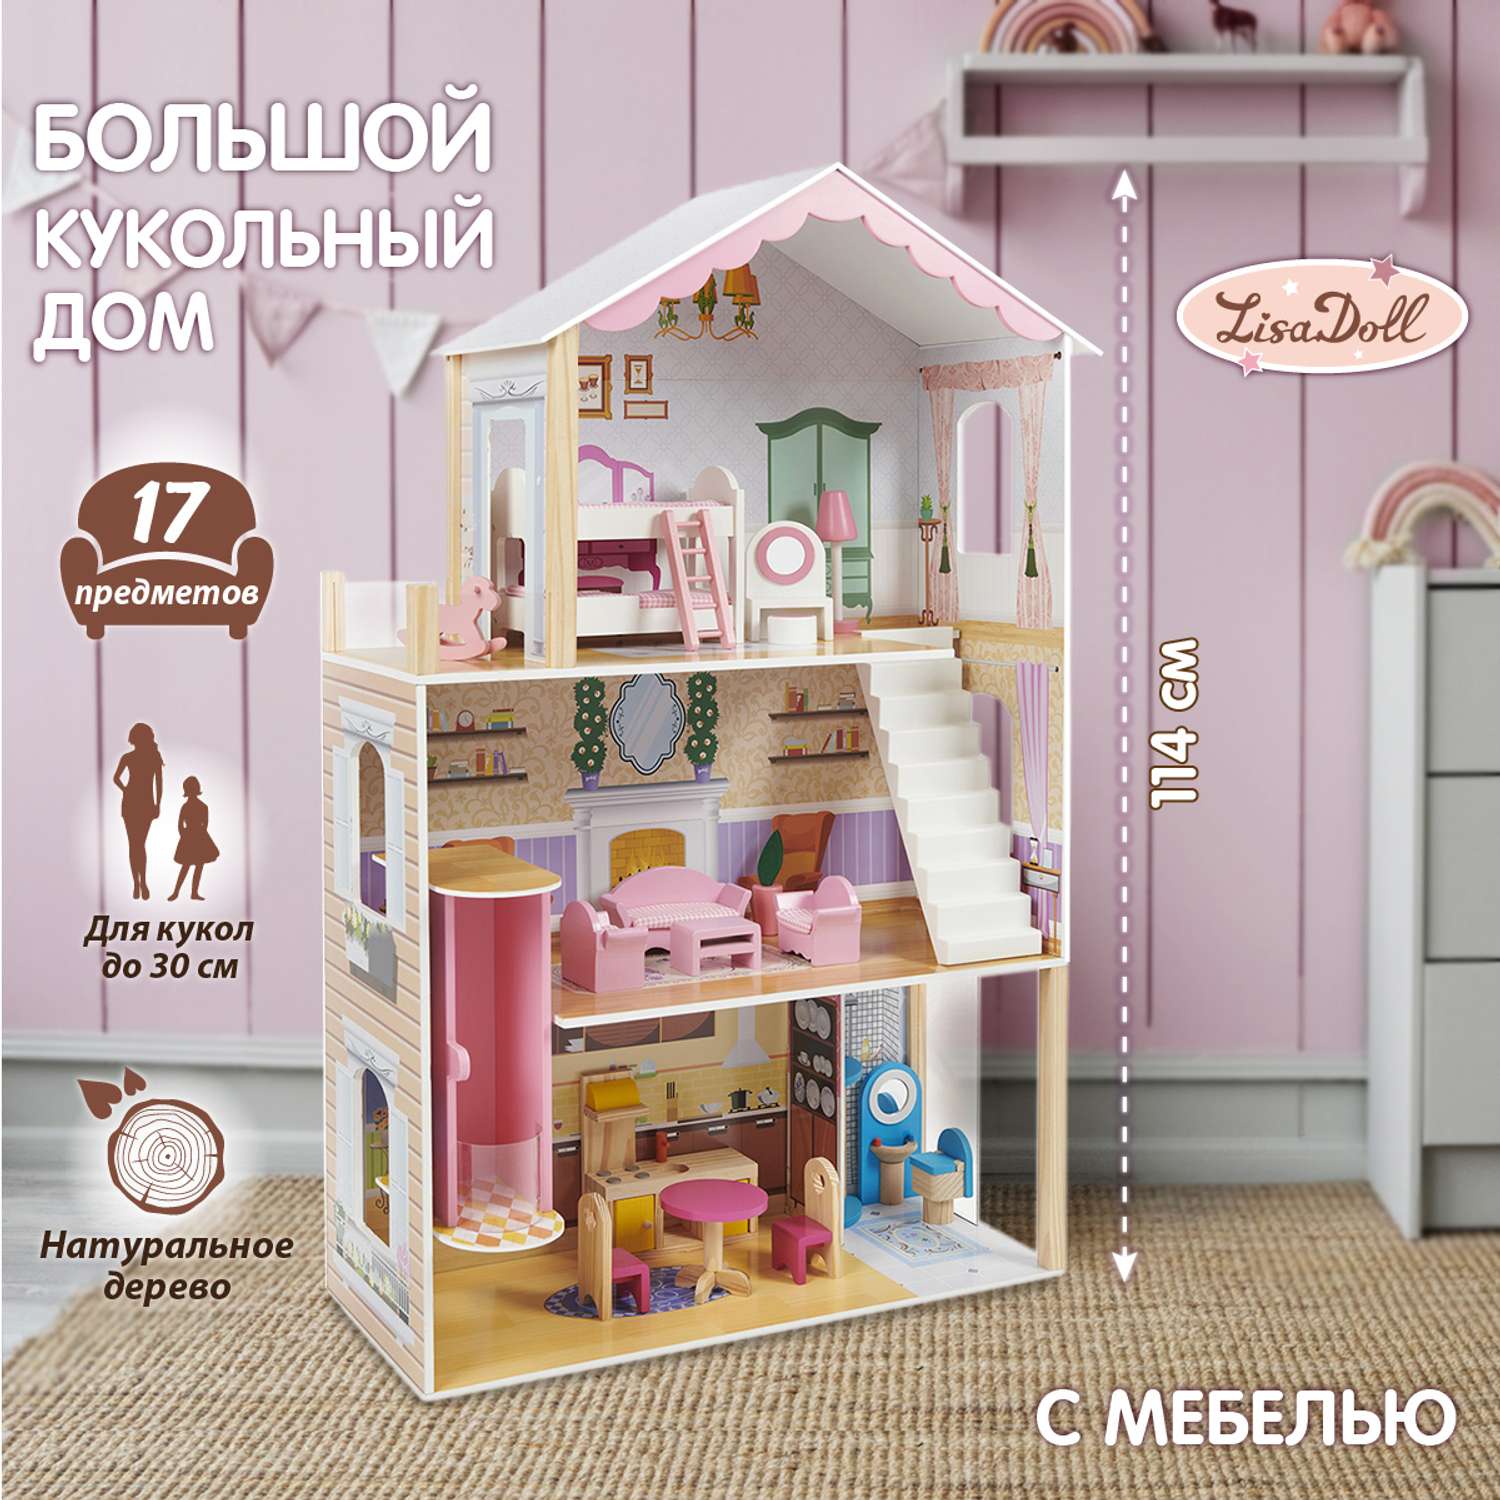 Кукольный домик Lisa Doll деревянный 3 этажа с мебелью 17 предметов 130440 - фото 1